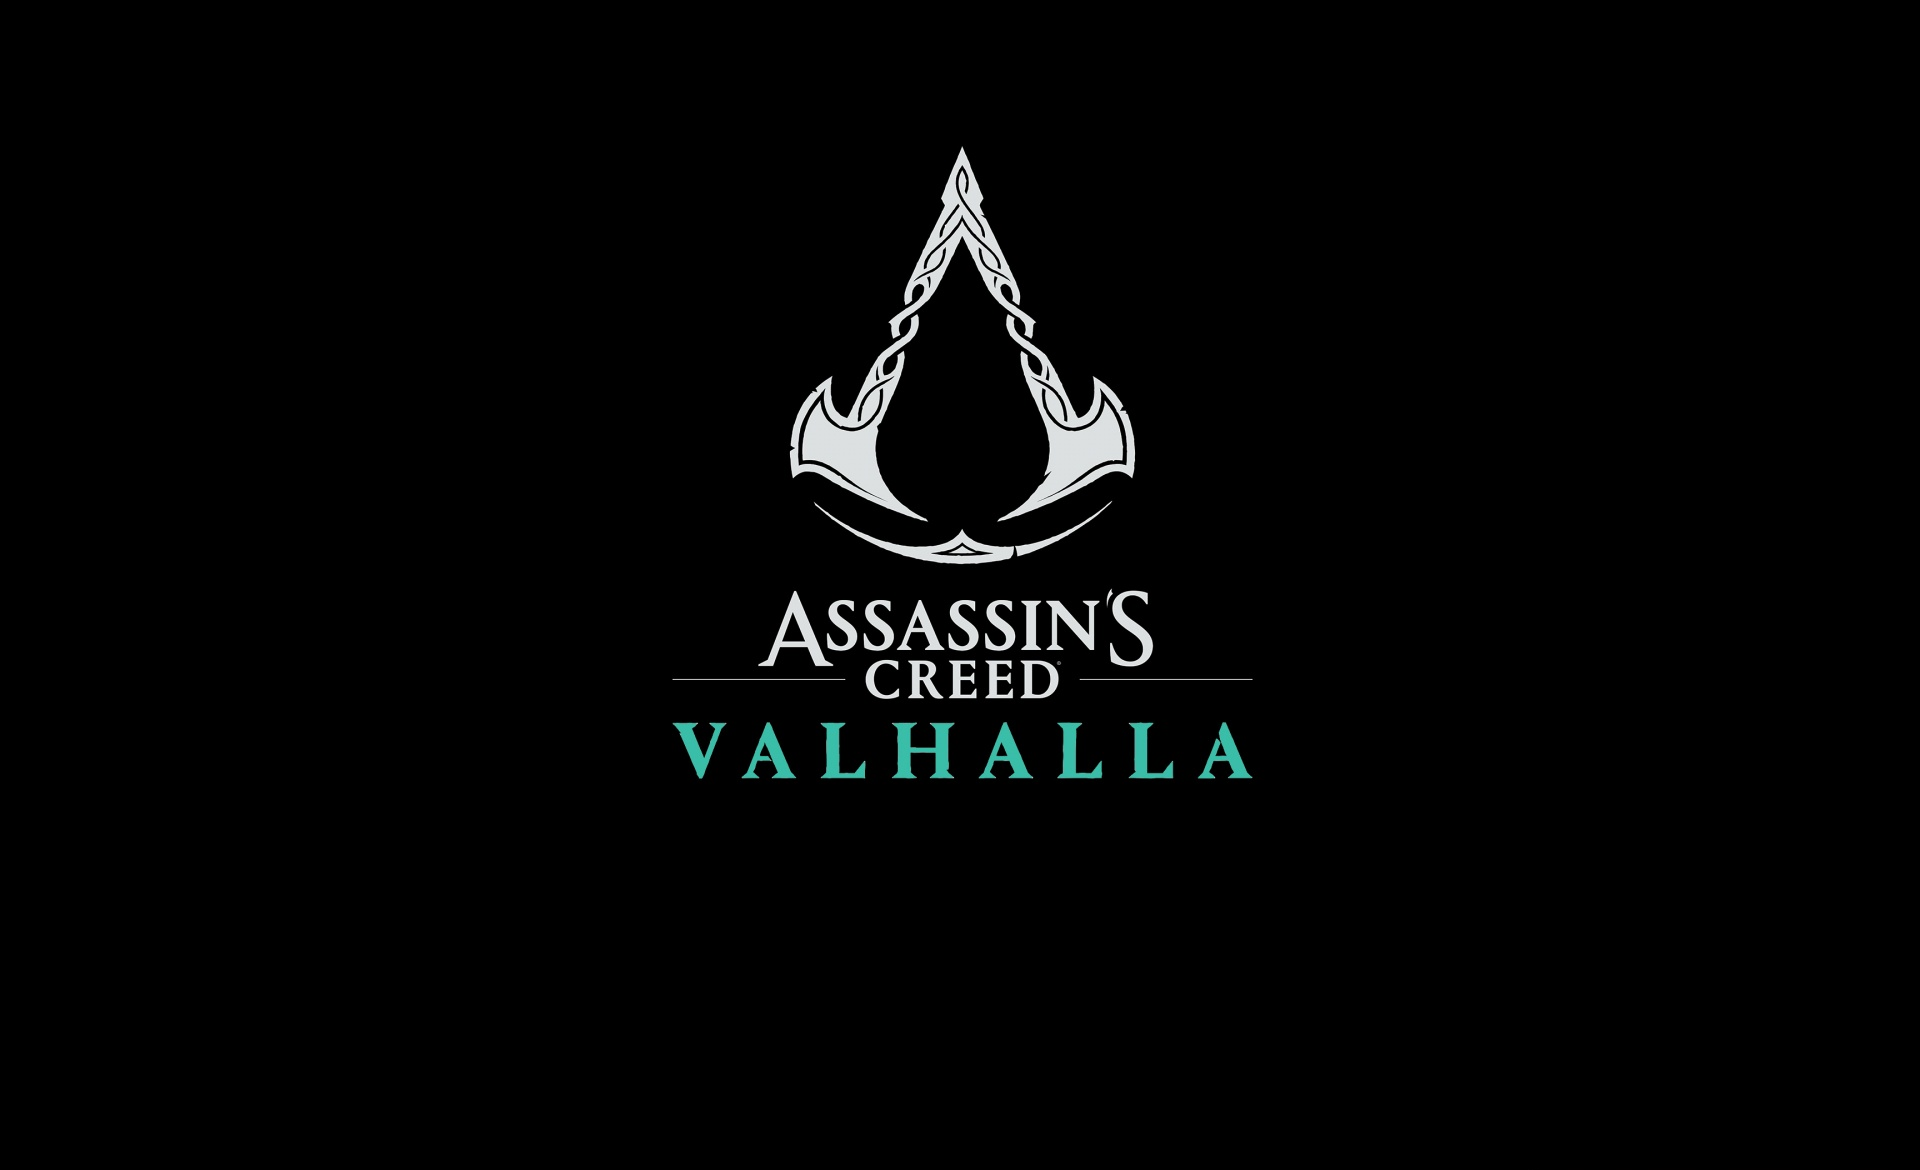 Ang Assassin's Creed Valhalla ay Nagbenta ng Maraming Mga Yunit sa Unang Linggo Nito kaysa sa Anumang Iba Pang Assassin's Creed Game Dati